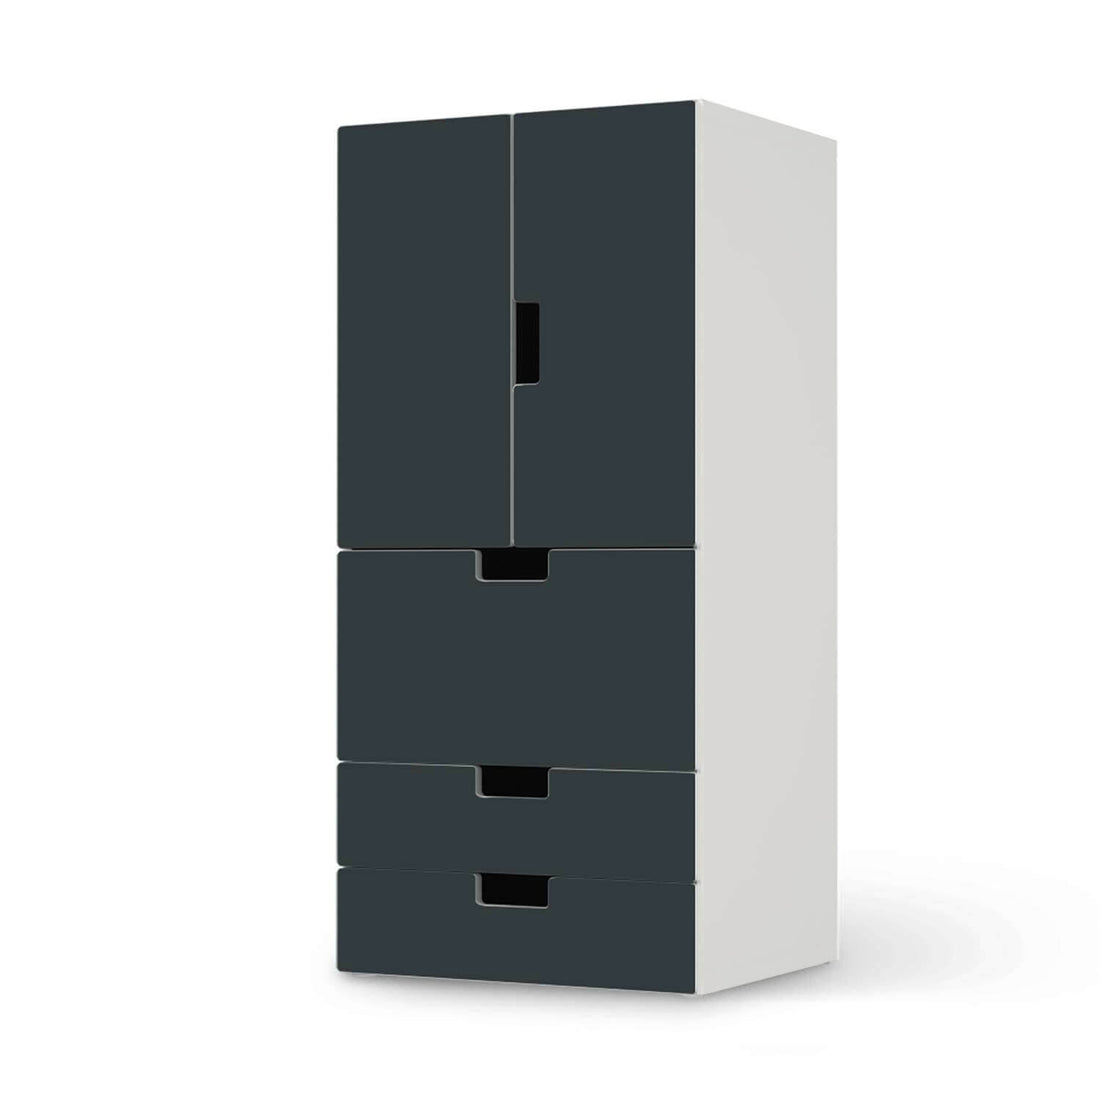 Möbelfolie Blaugrau Dark - IKEA Stuva kombiniert - 3 Schubladen und 2 kleine Türen  - weiss